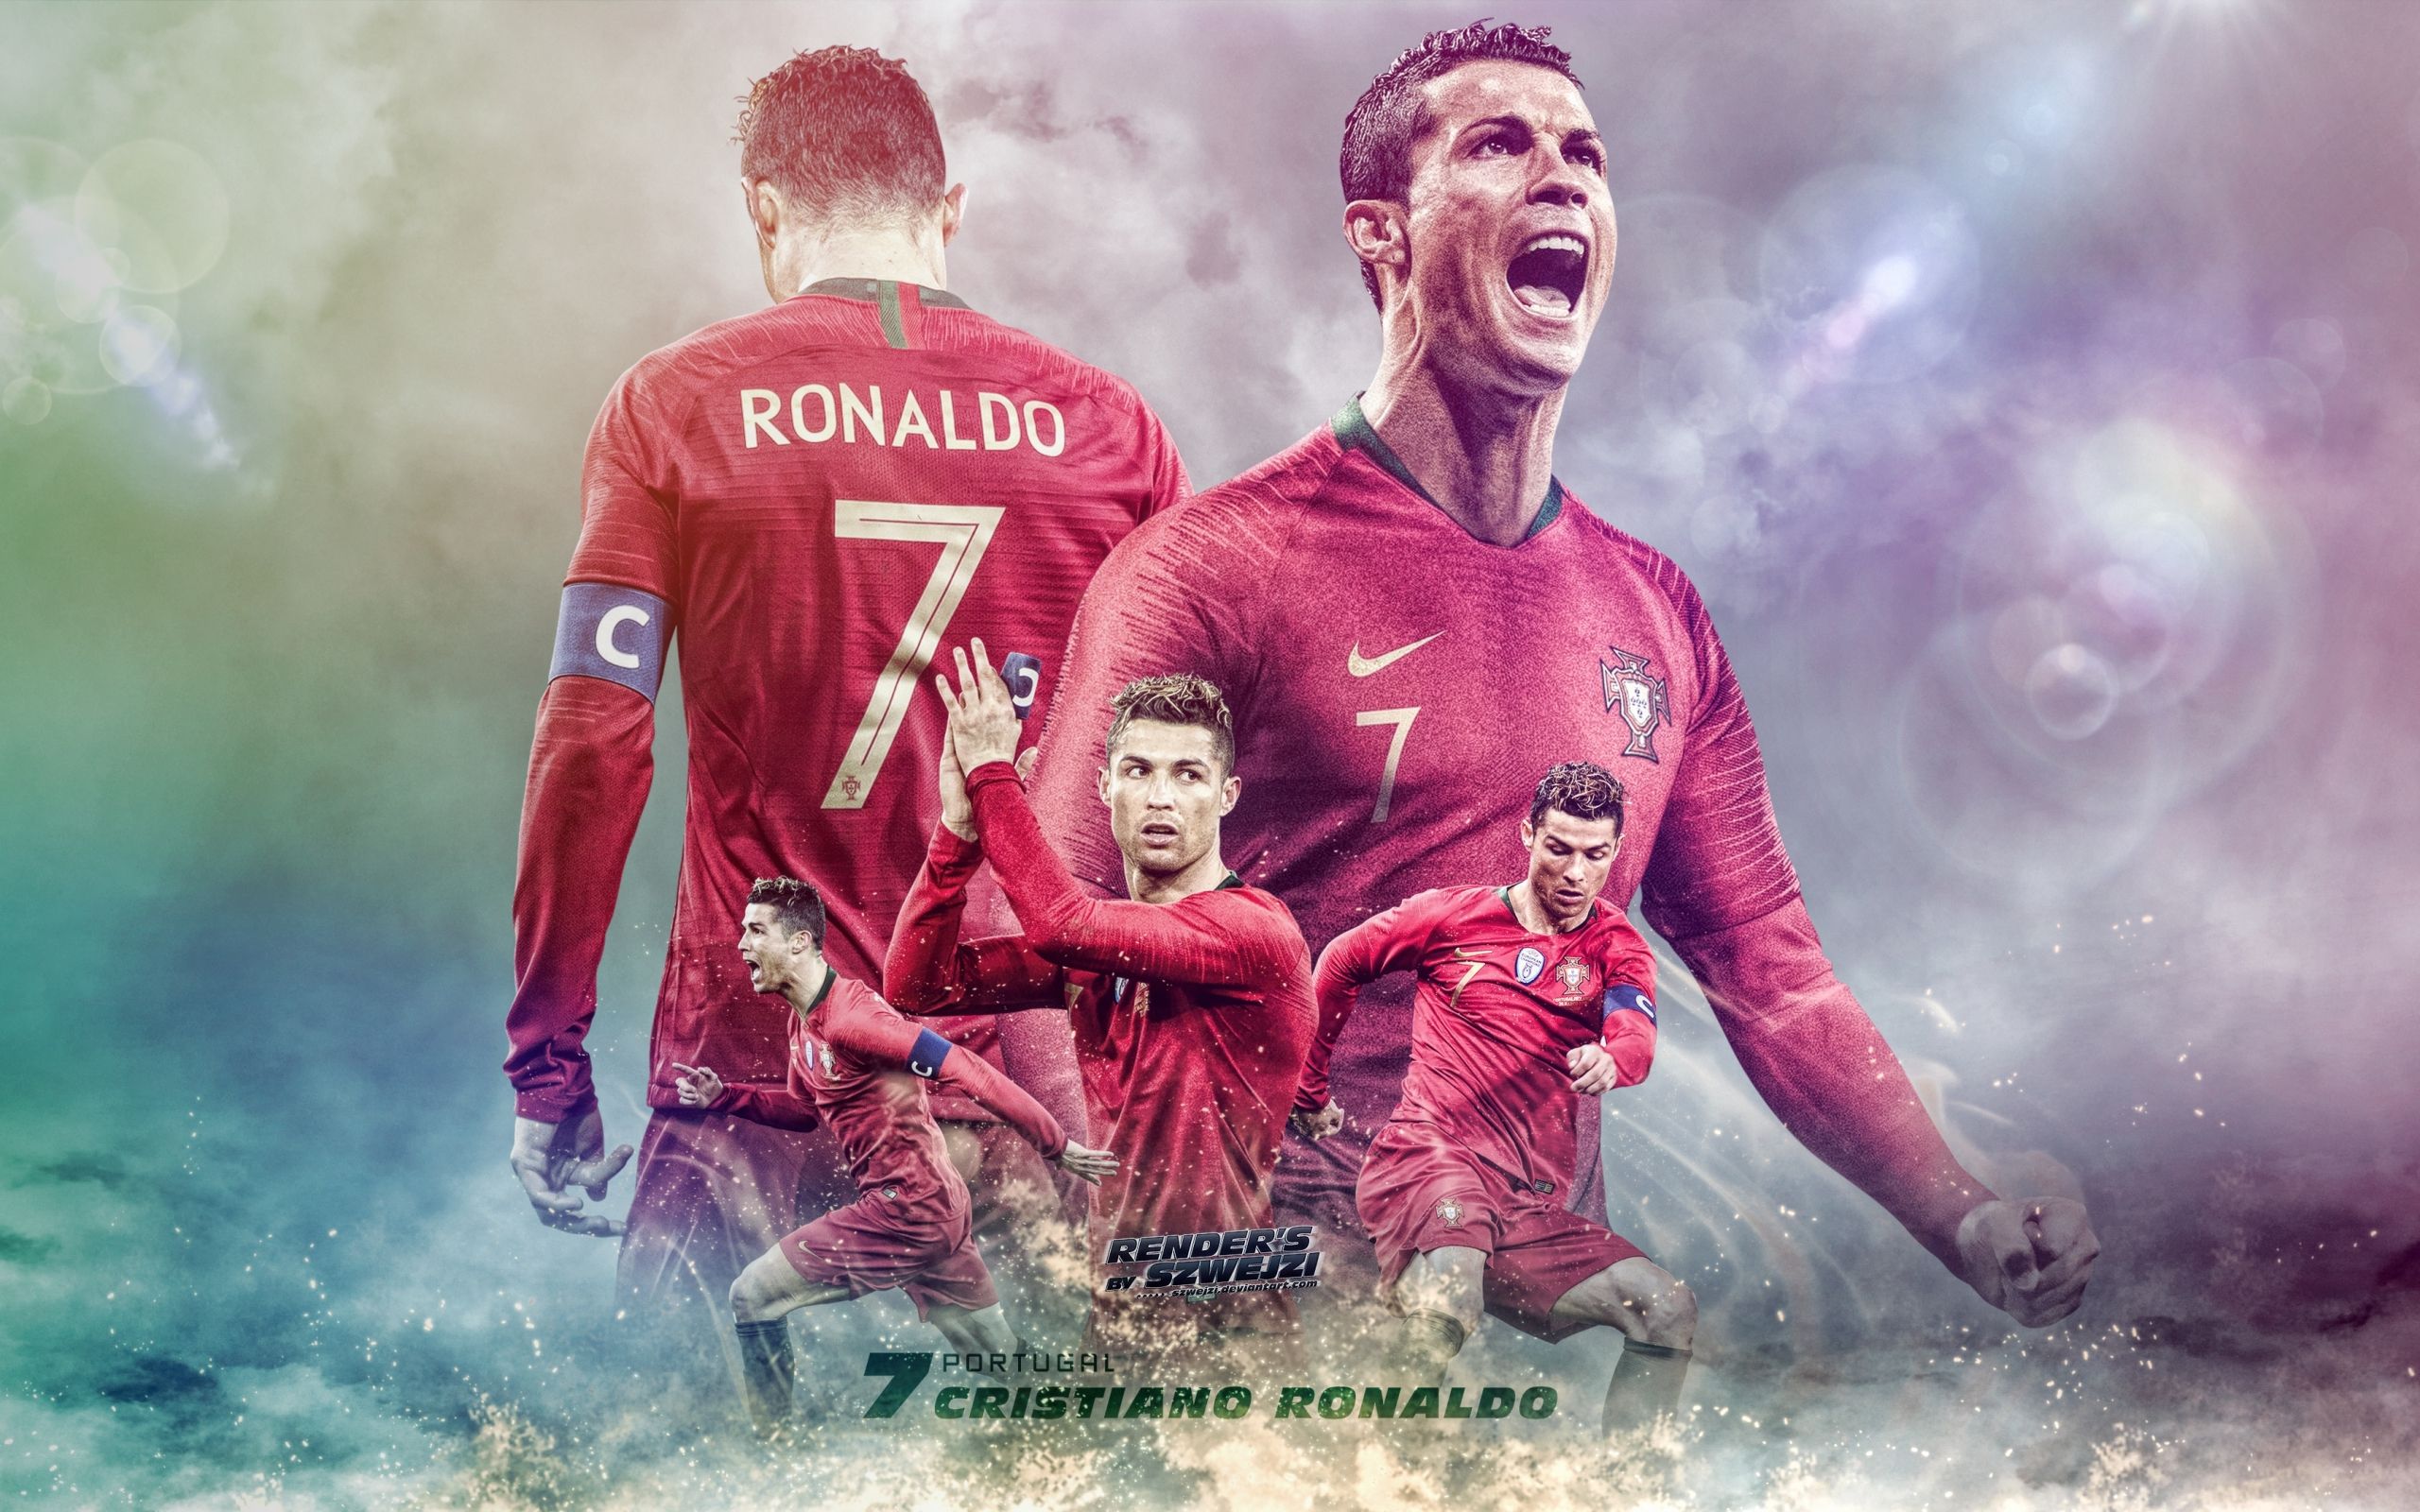 Portugal Ultra HD Portugal Cristiano Ronaldo Wallpaper Wallpaper Nature